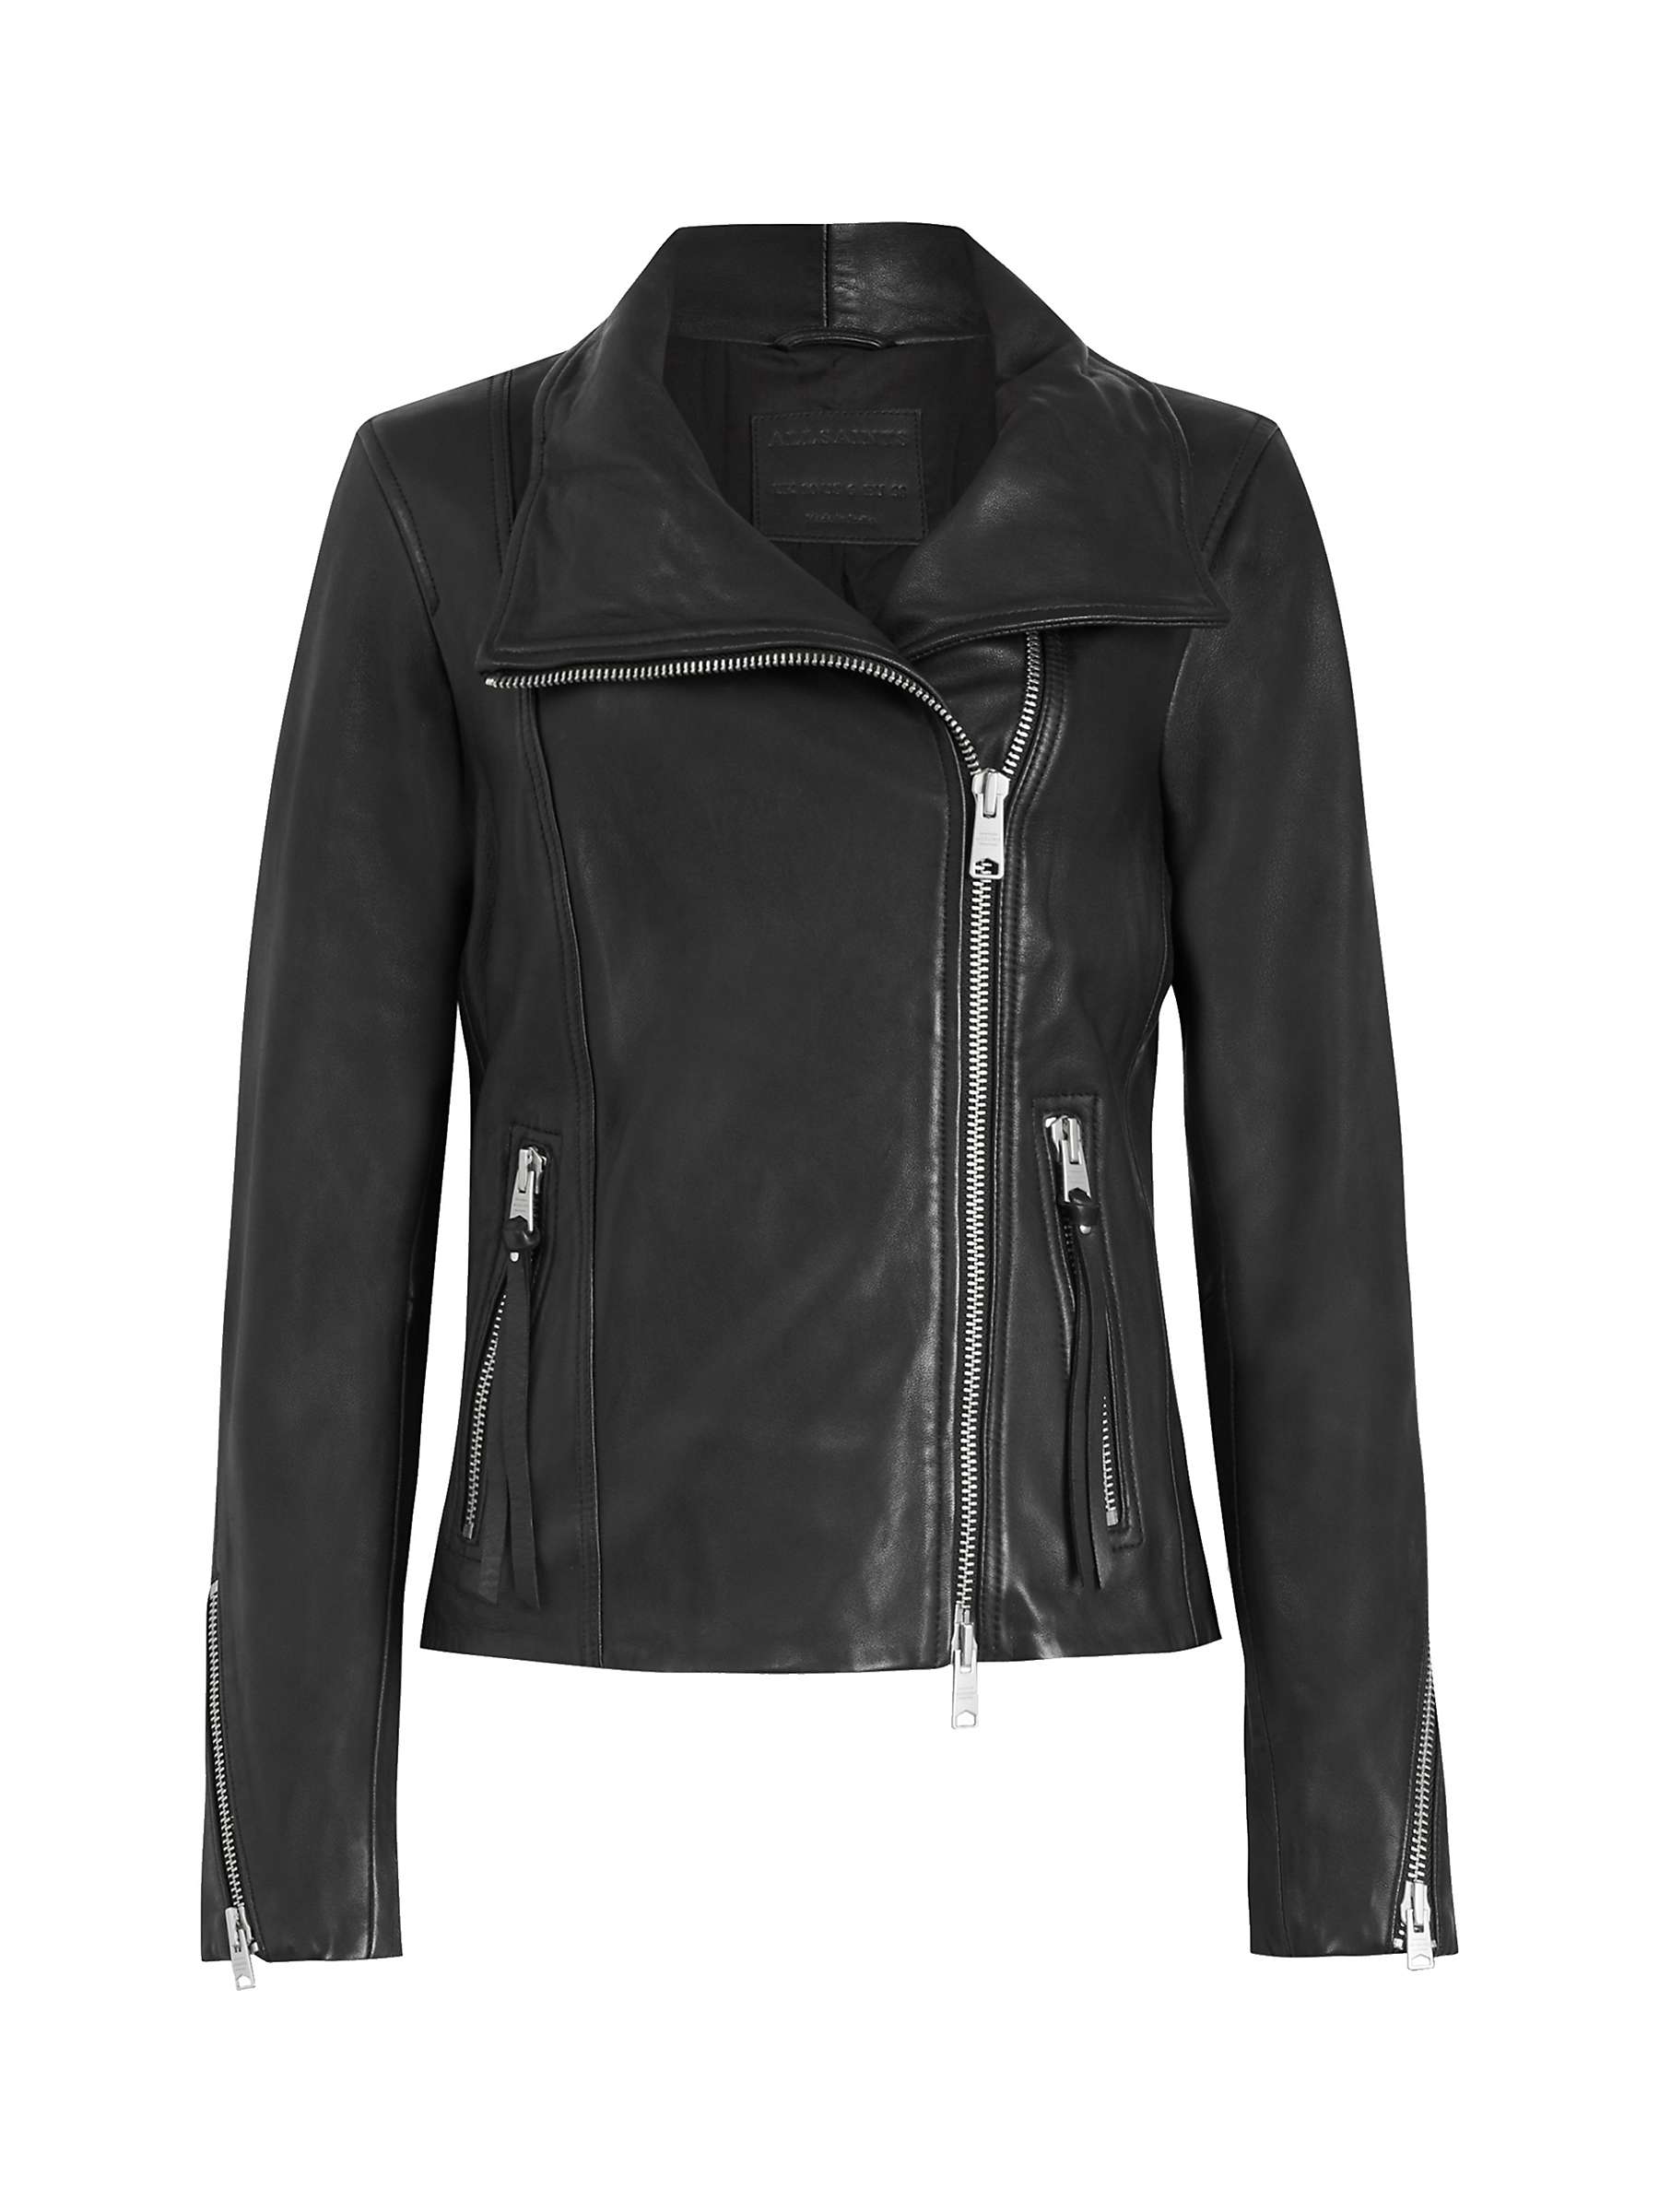 Buy AllSaints Ellis Leather Biker Jacket Online at johnlewis.com